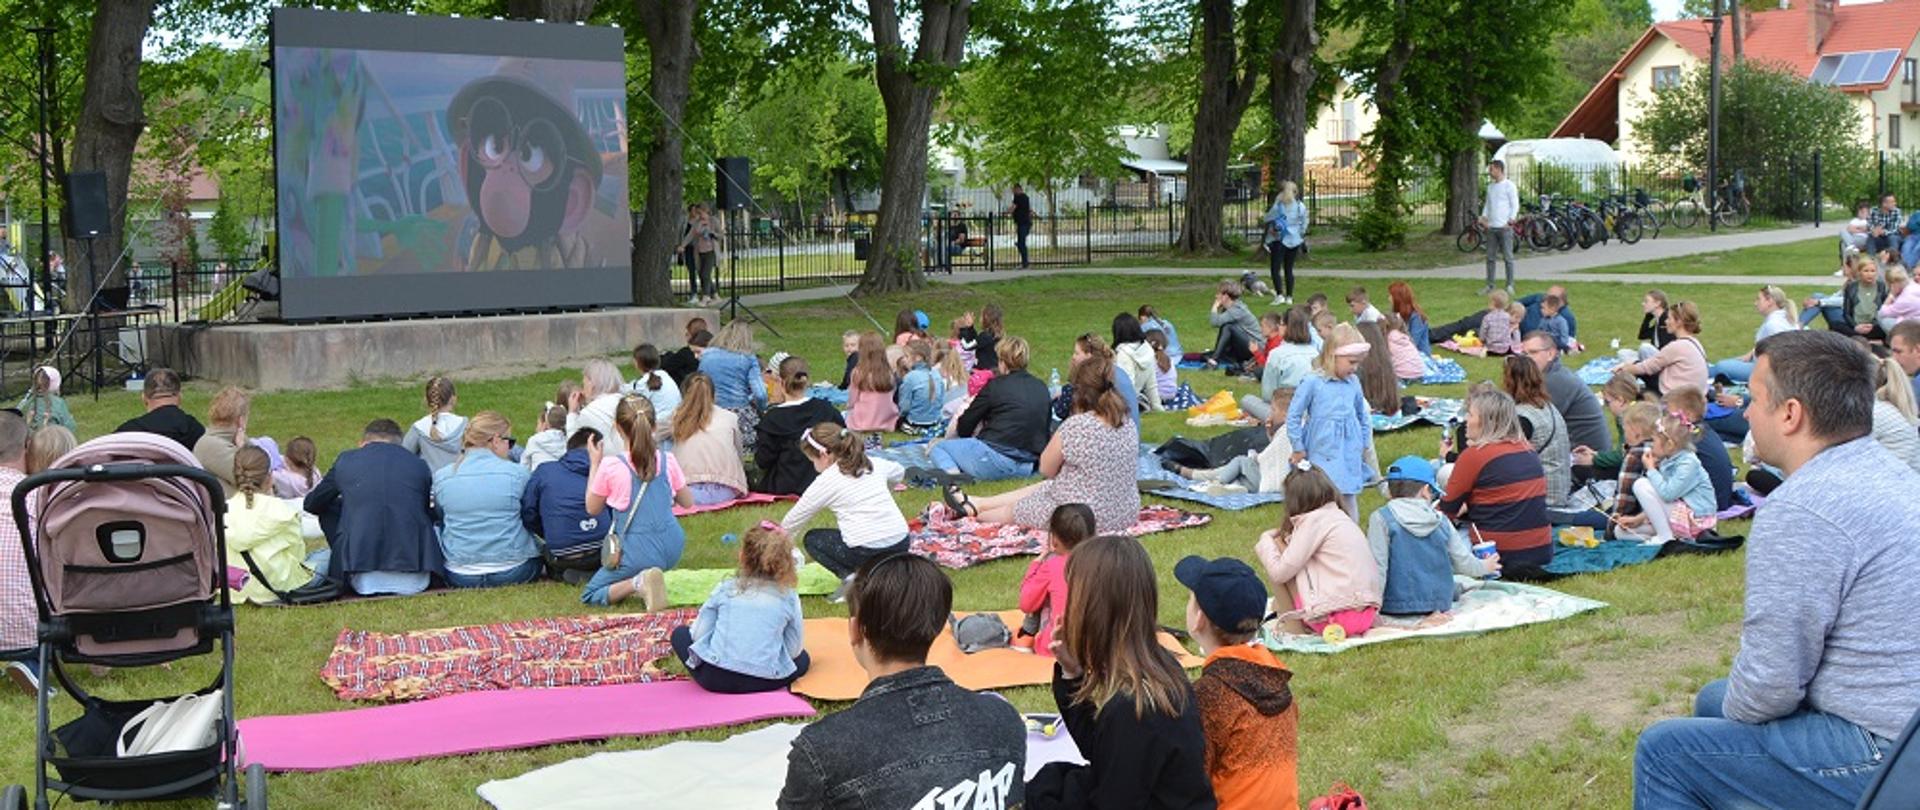 dzieci i dorośli siedzą na kocach na trawie i oglądają bajkę na dużym ekranie 